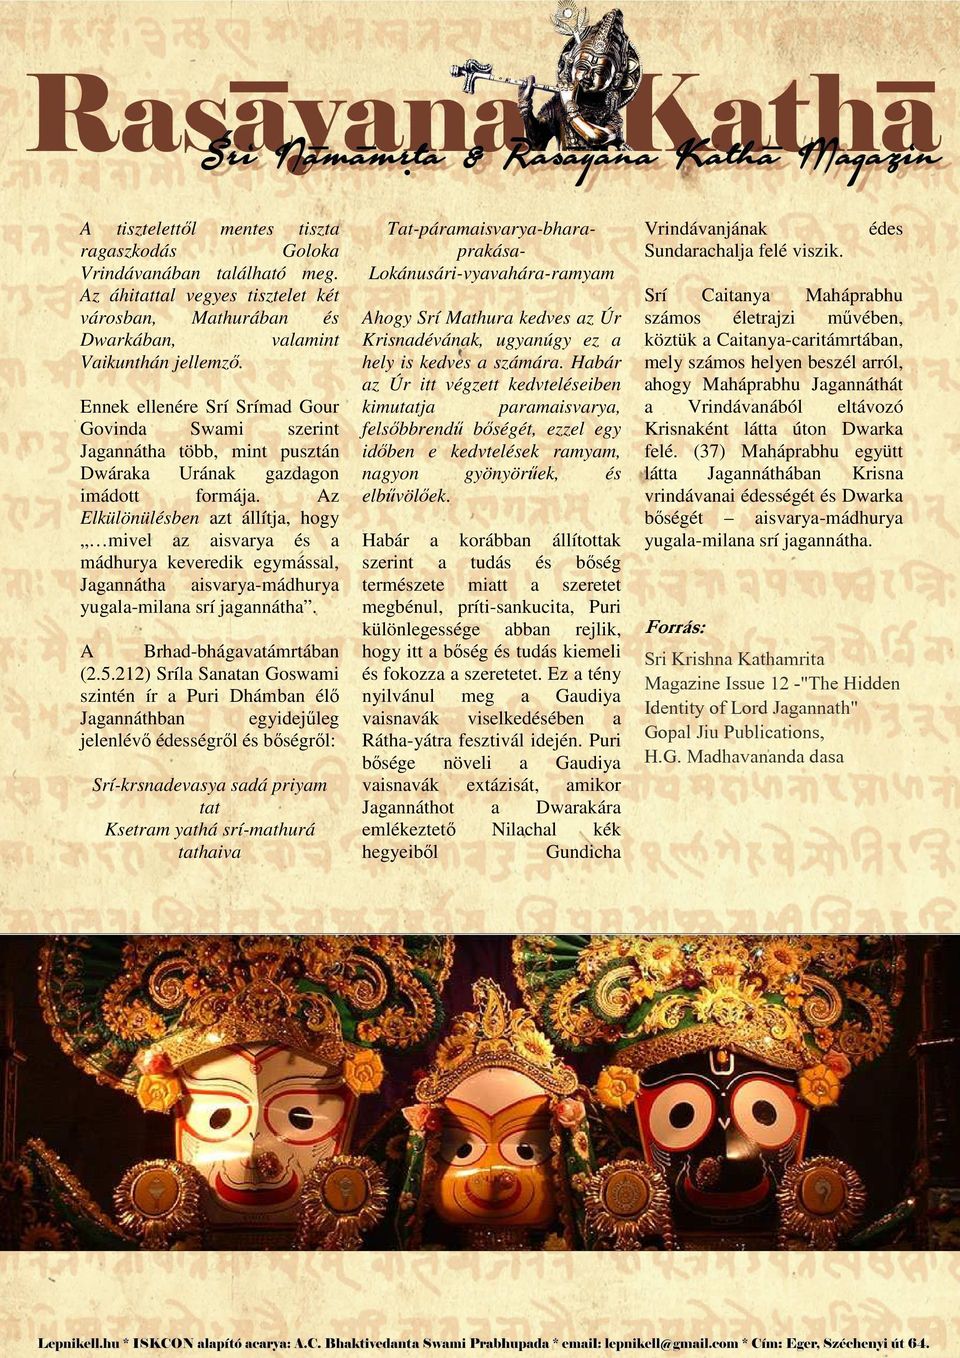 Az Elkülönülésben azt állítja, hogy mivel az aisvarya és a mádhurya keveredik egymással, Jagannátha aisvarya-mádhurya yugala-milana srí jagannátha. A Brhad-bhágavatámrtában (2.5.